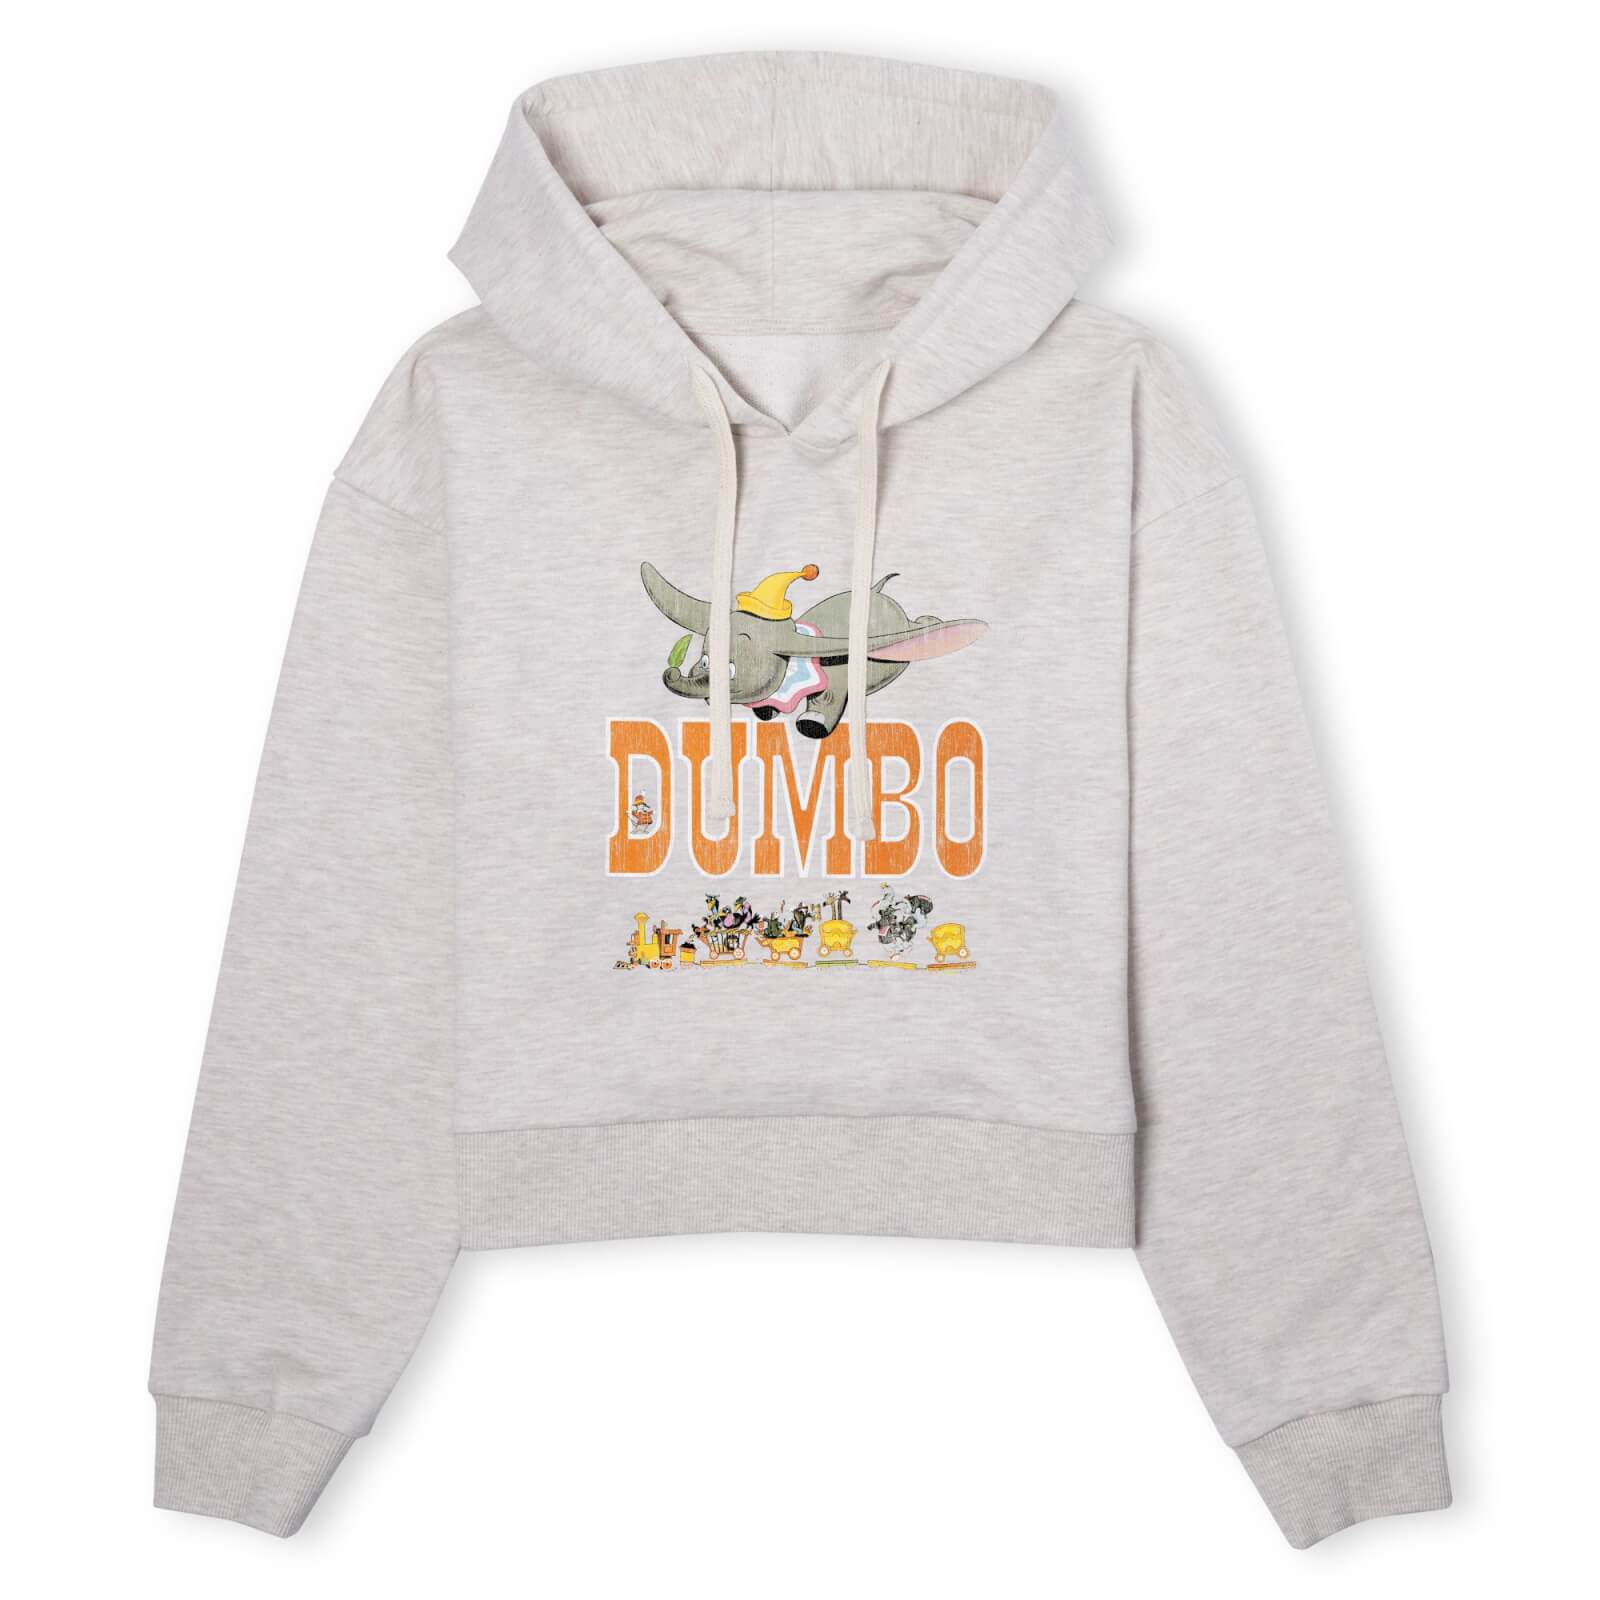 Dumbo The One The Only Women's Cropped Hoodie - Ecru Marl - M - ecru marl